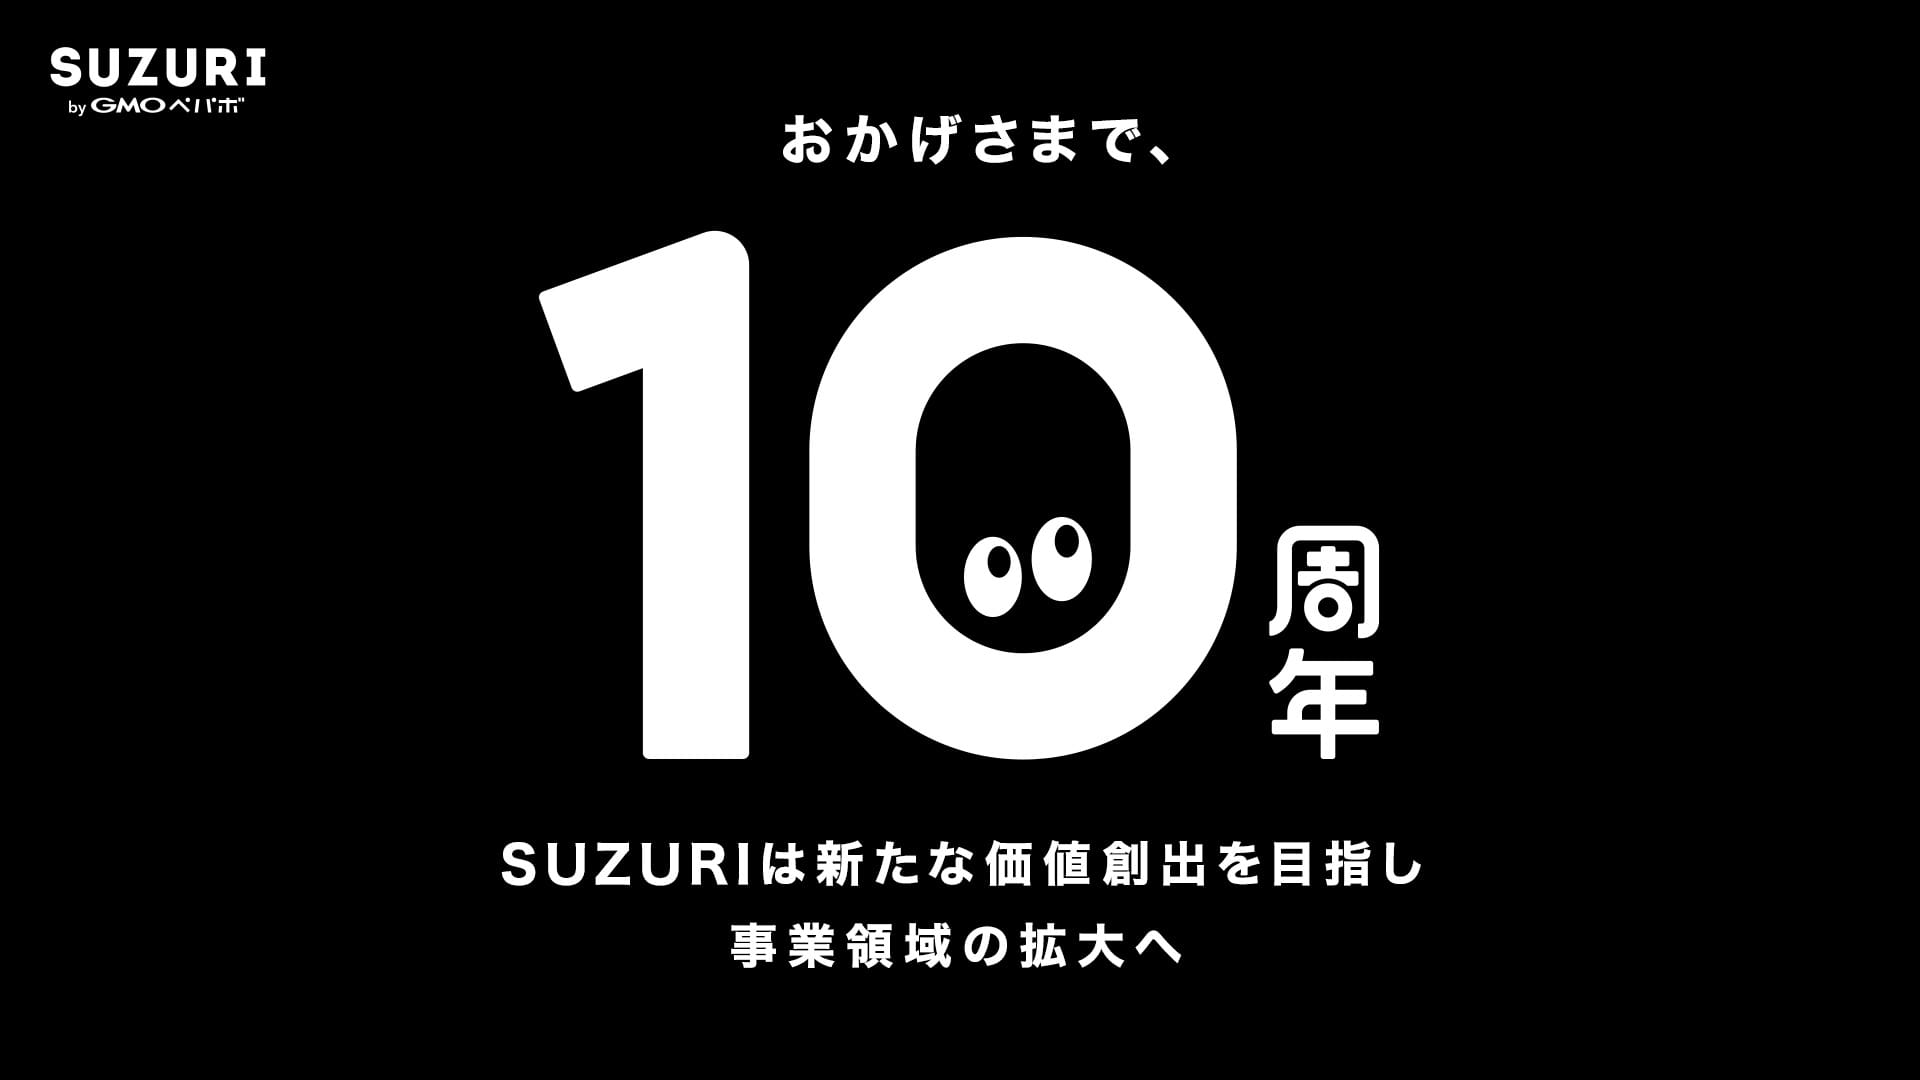 「おかげさまで、10周年 SUZURIは新たな価値創出を目指し事業領域の拡大へ」というテキストが入っているバナー画像